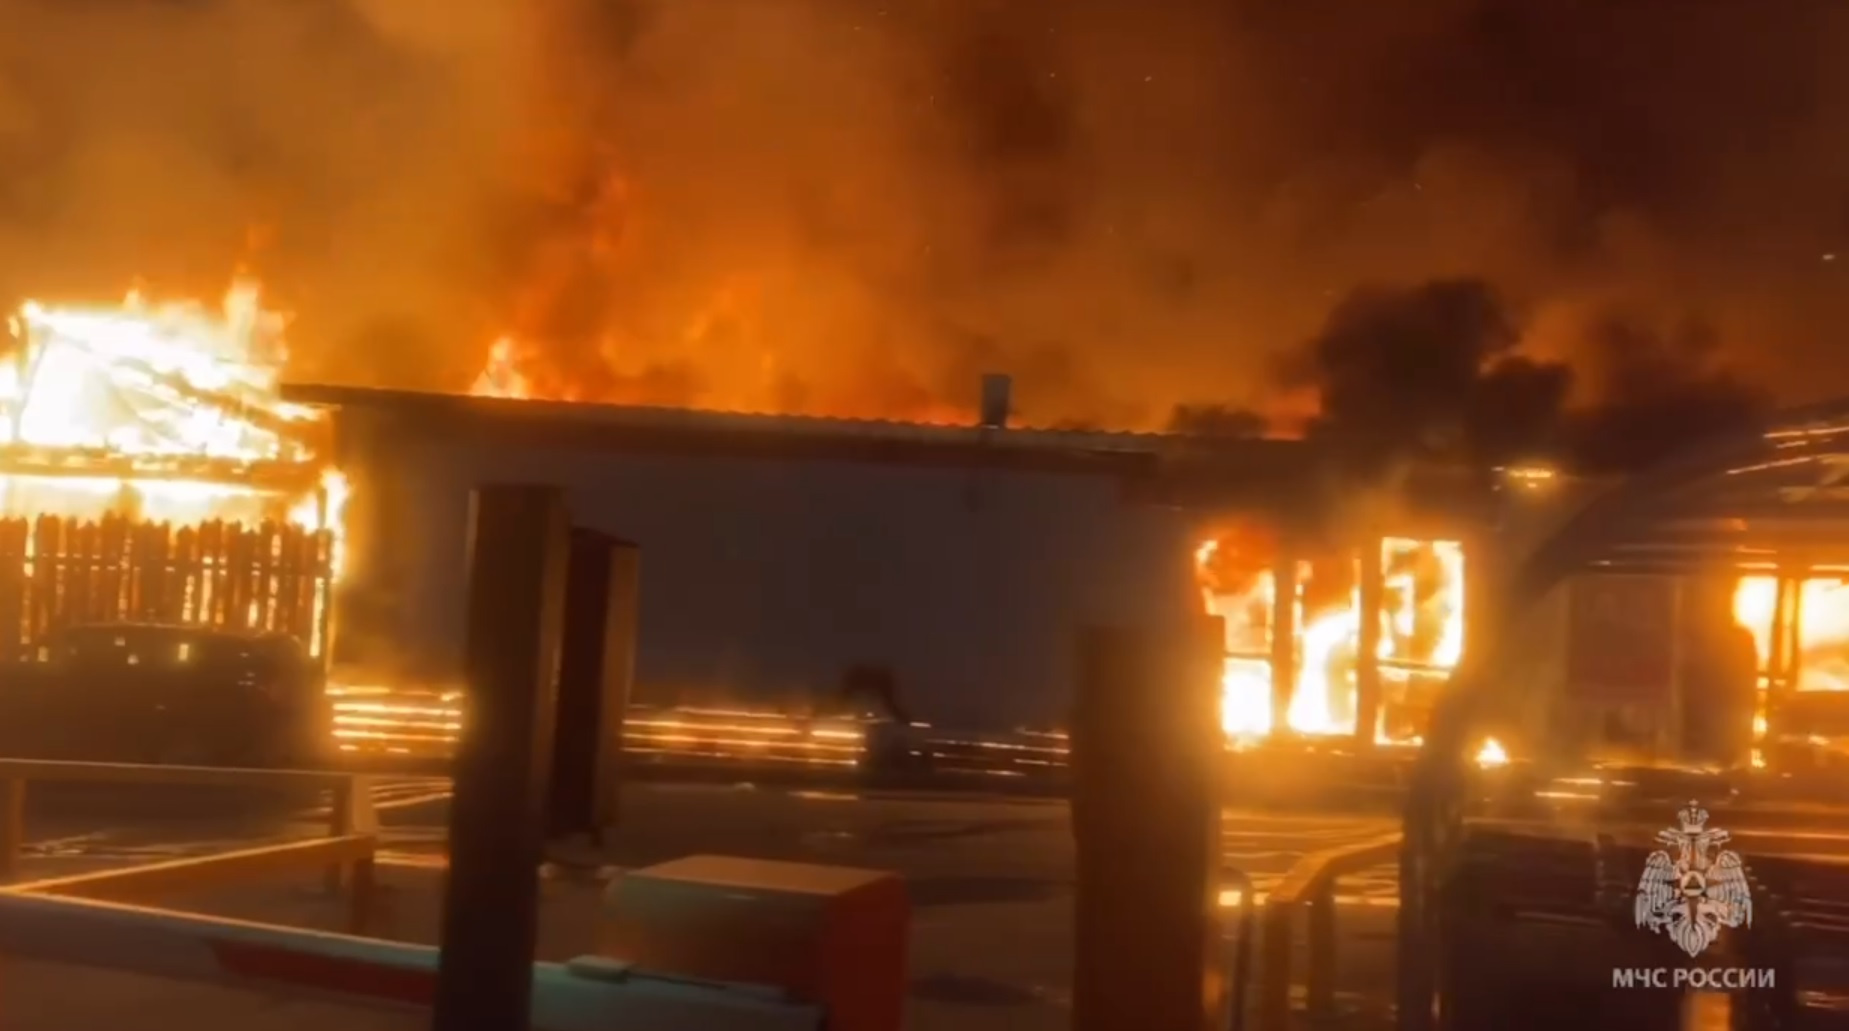 МЧС показывает мощный пожар в Химках. По соседству — АЗС с топливом под землёй